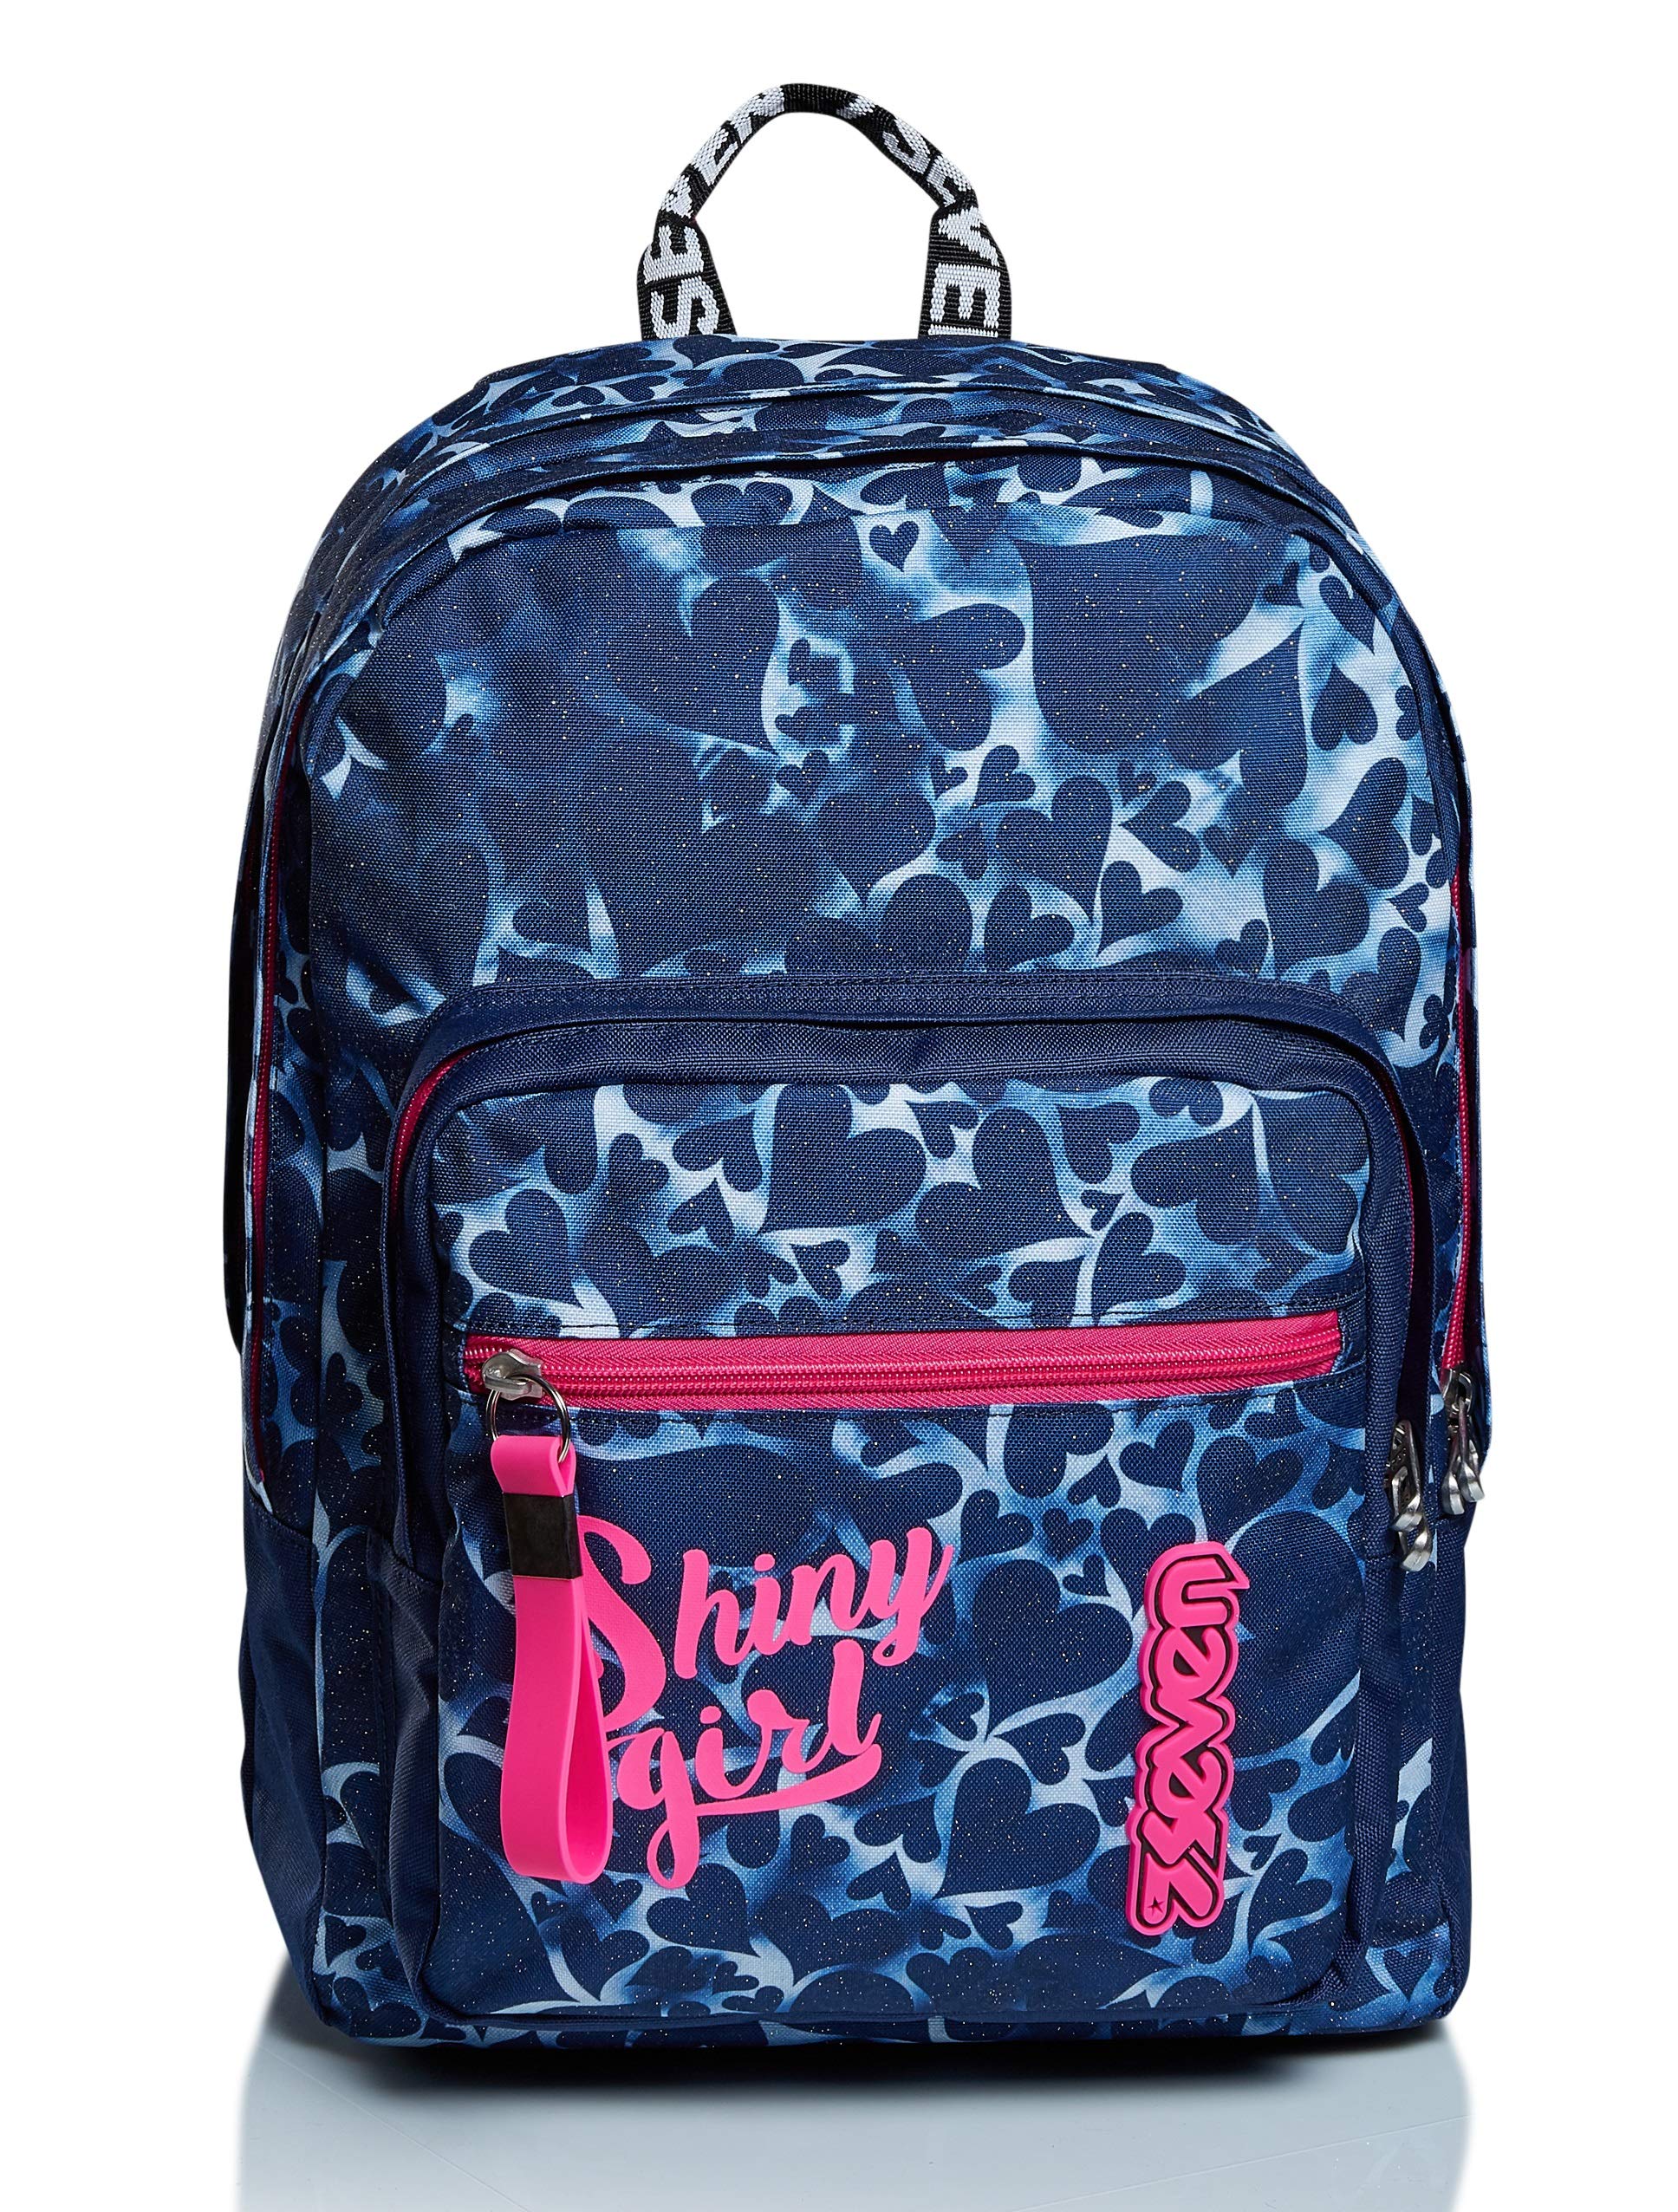 RUCKSACK EXTRA FIT SEVEN HEARTS Backpack für Schule, Uni & Freizeit, Geräumige Schultasche für Teenager, Mädchen und Jungen, blau, italienisches Design